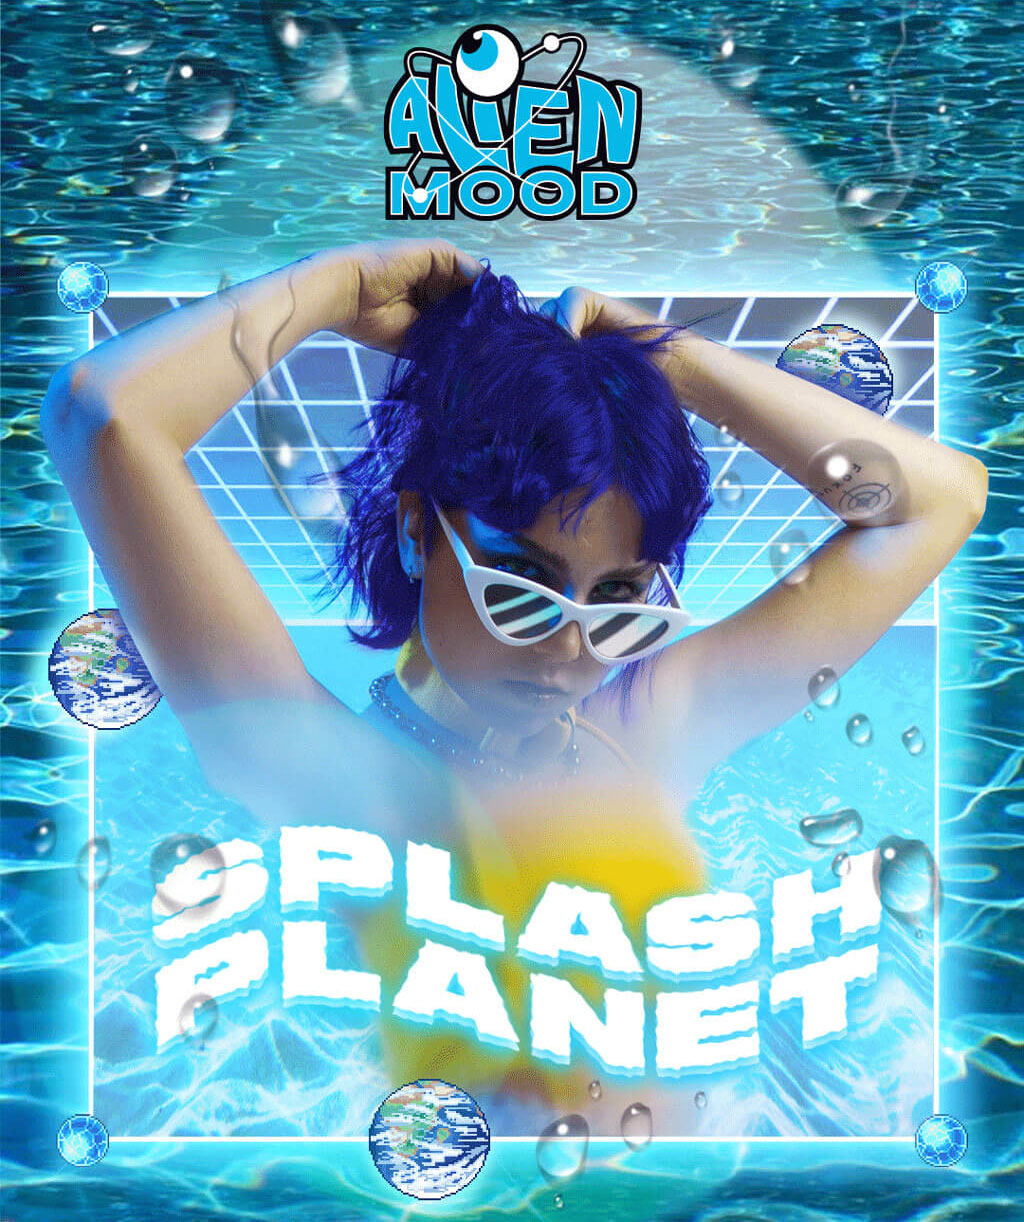 Alien Mood Splash PLanet Campaign 01